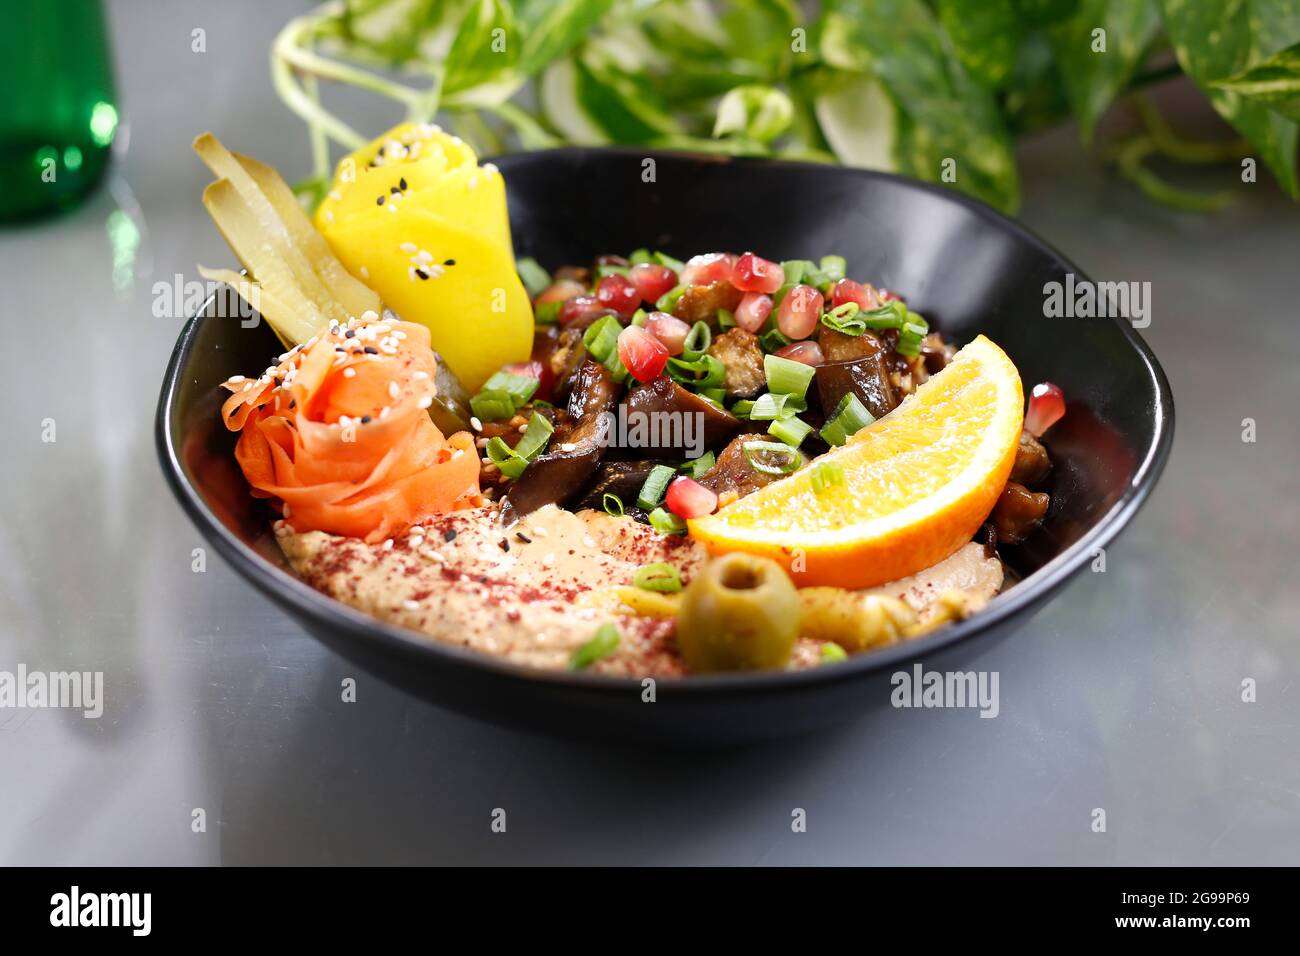 Humus mit einem Fleck Pilze und Gemüse. Vegetarisches Gericht, Food Photography, Serviervorschlag. Stockfoto